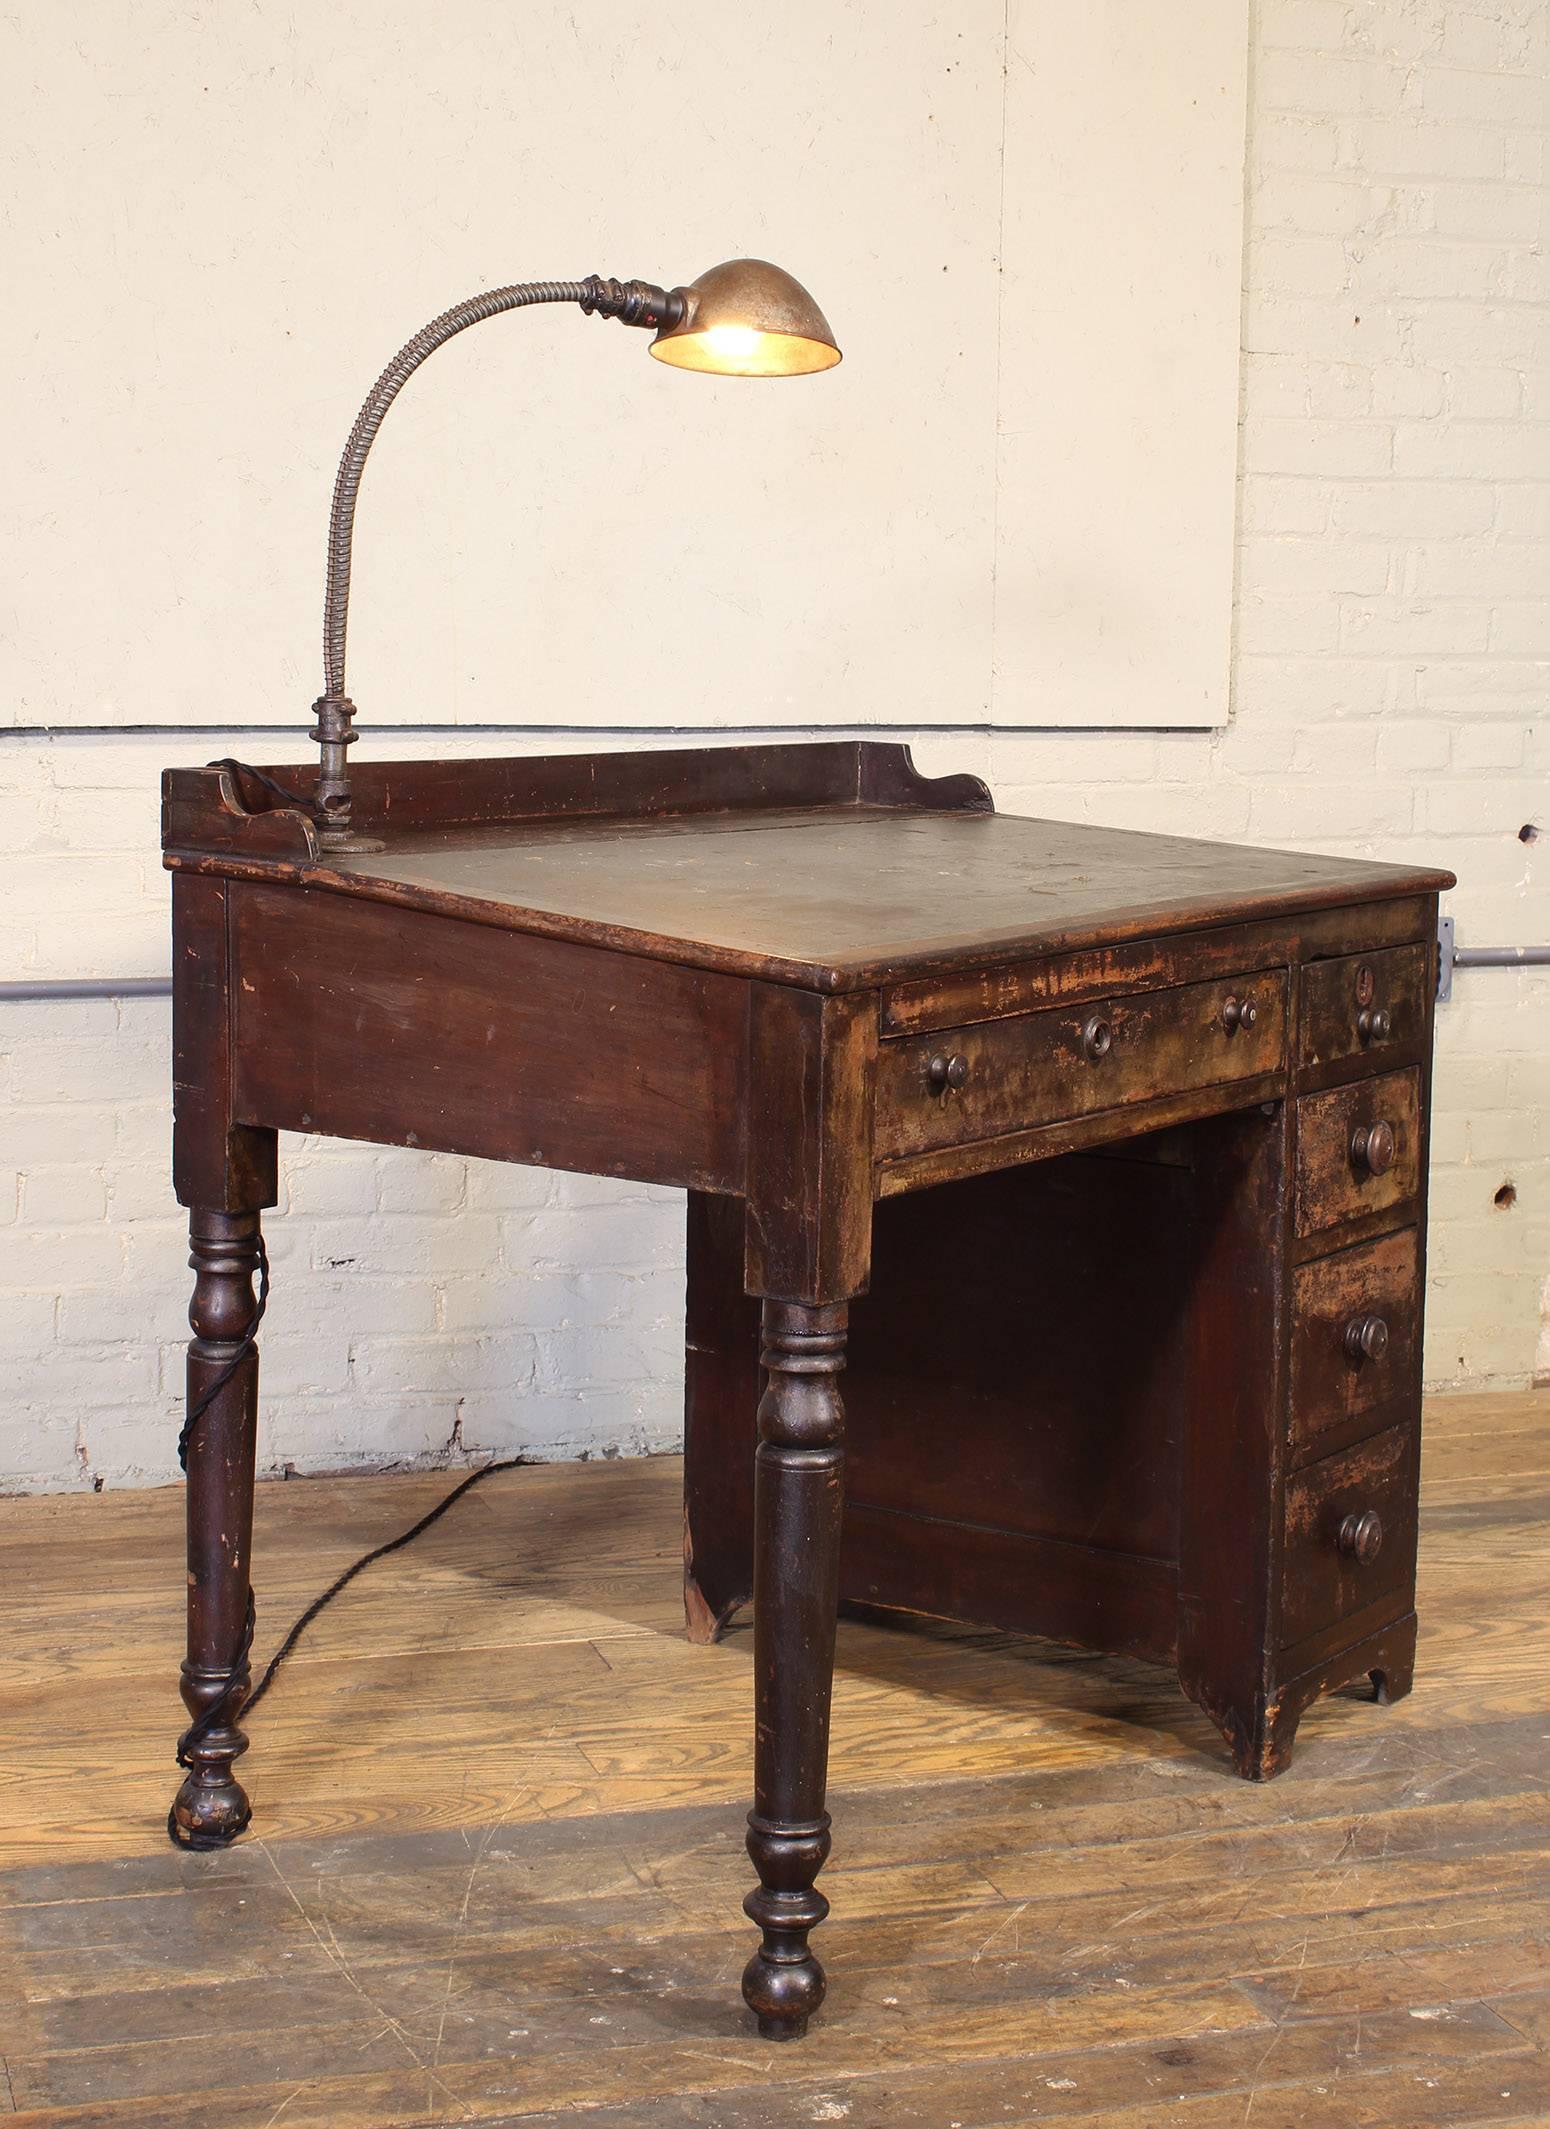 American Vintage Industrial Clerk's Desk with Adjustable Task-Light